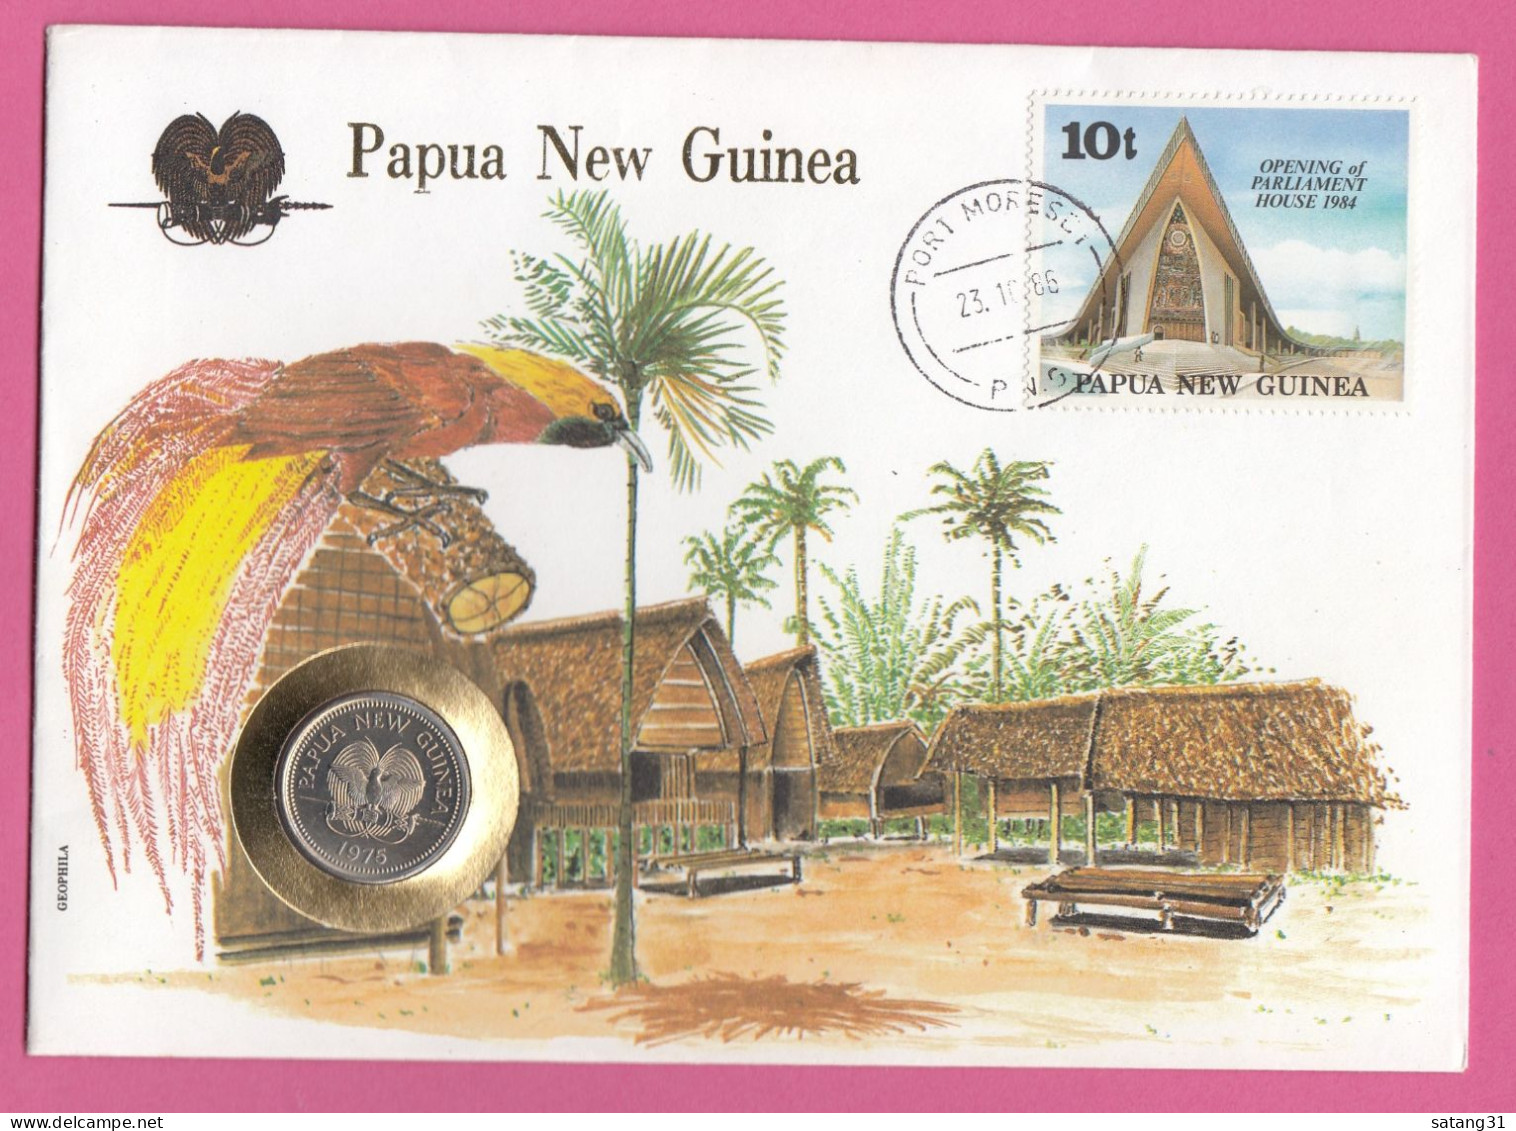 PAPOUASIE NOUVELLE GUINEE.ENVELOPPE AVEC TIMBRE ET MONNAIE,1986. - Monnaies